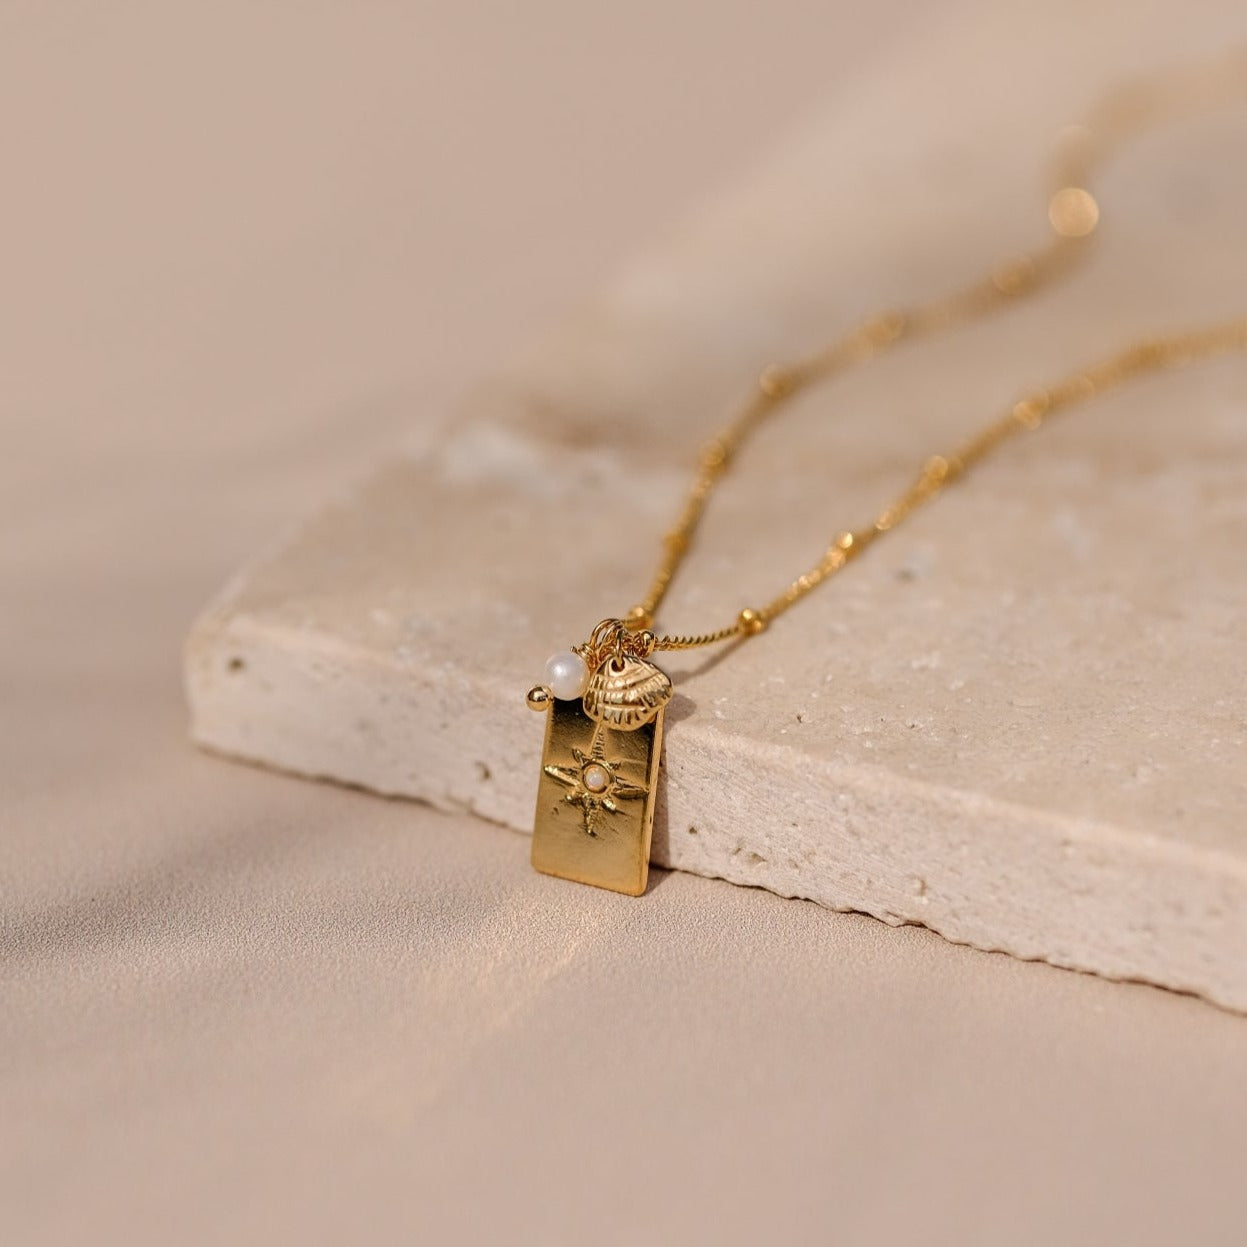 Collier "Dream" composé d'une médaille "étoile du nord" en opale accompagné d'une perle de culture blanche et d'une breloque coquillage monté sur une chaine fine à bille le tout doré à l'or fin.